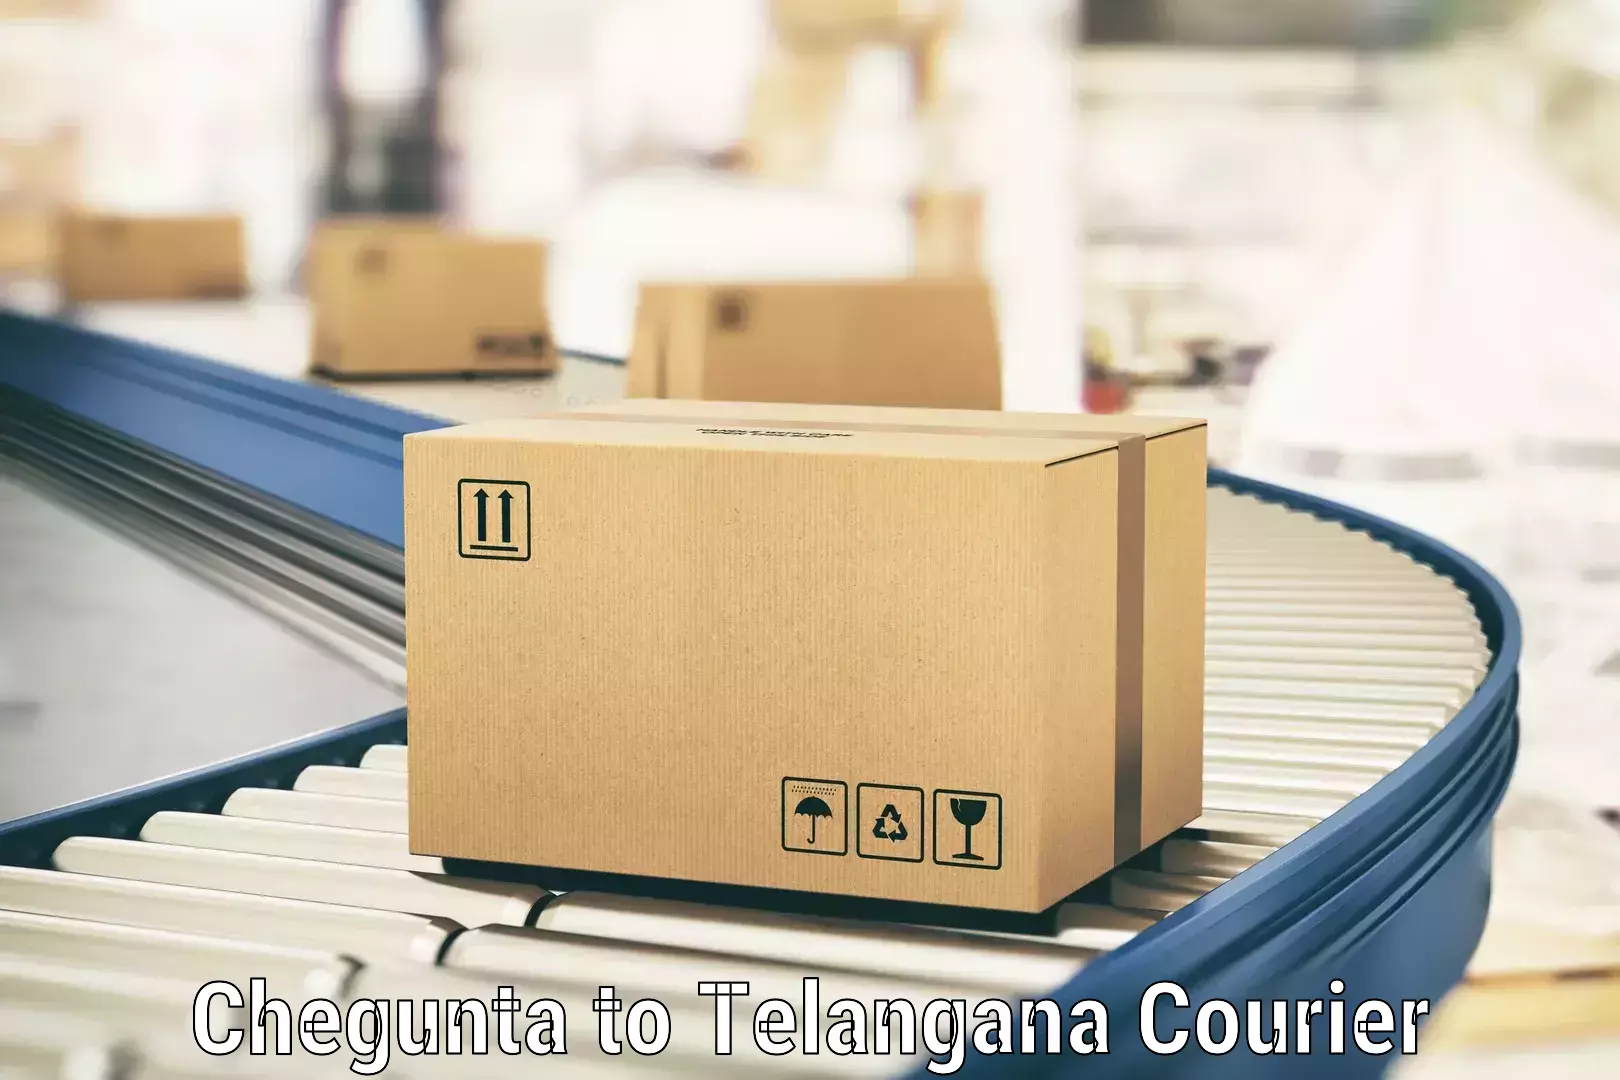 Courier service comparison Chegunta to Tallada